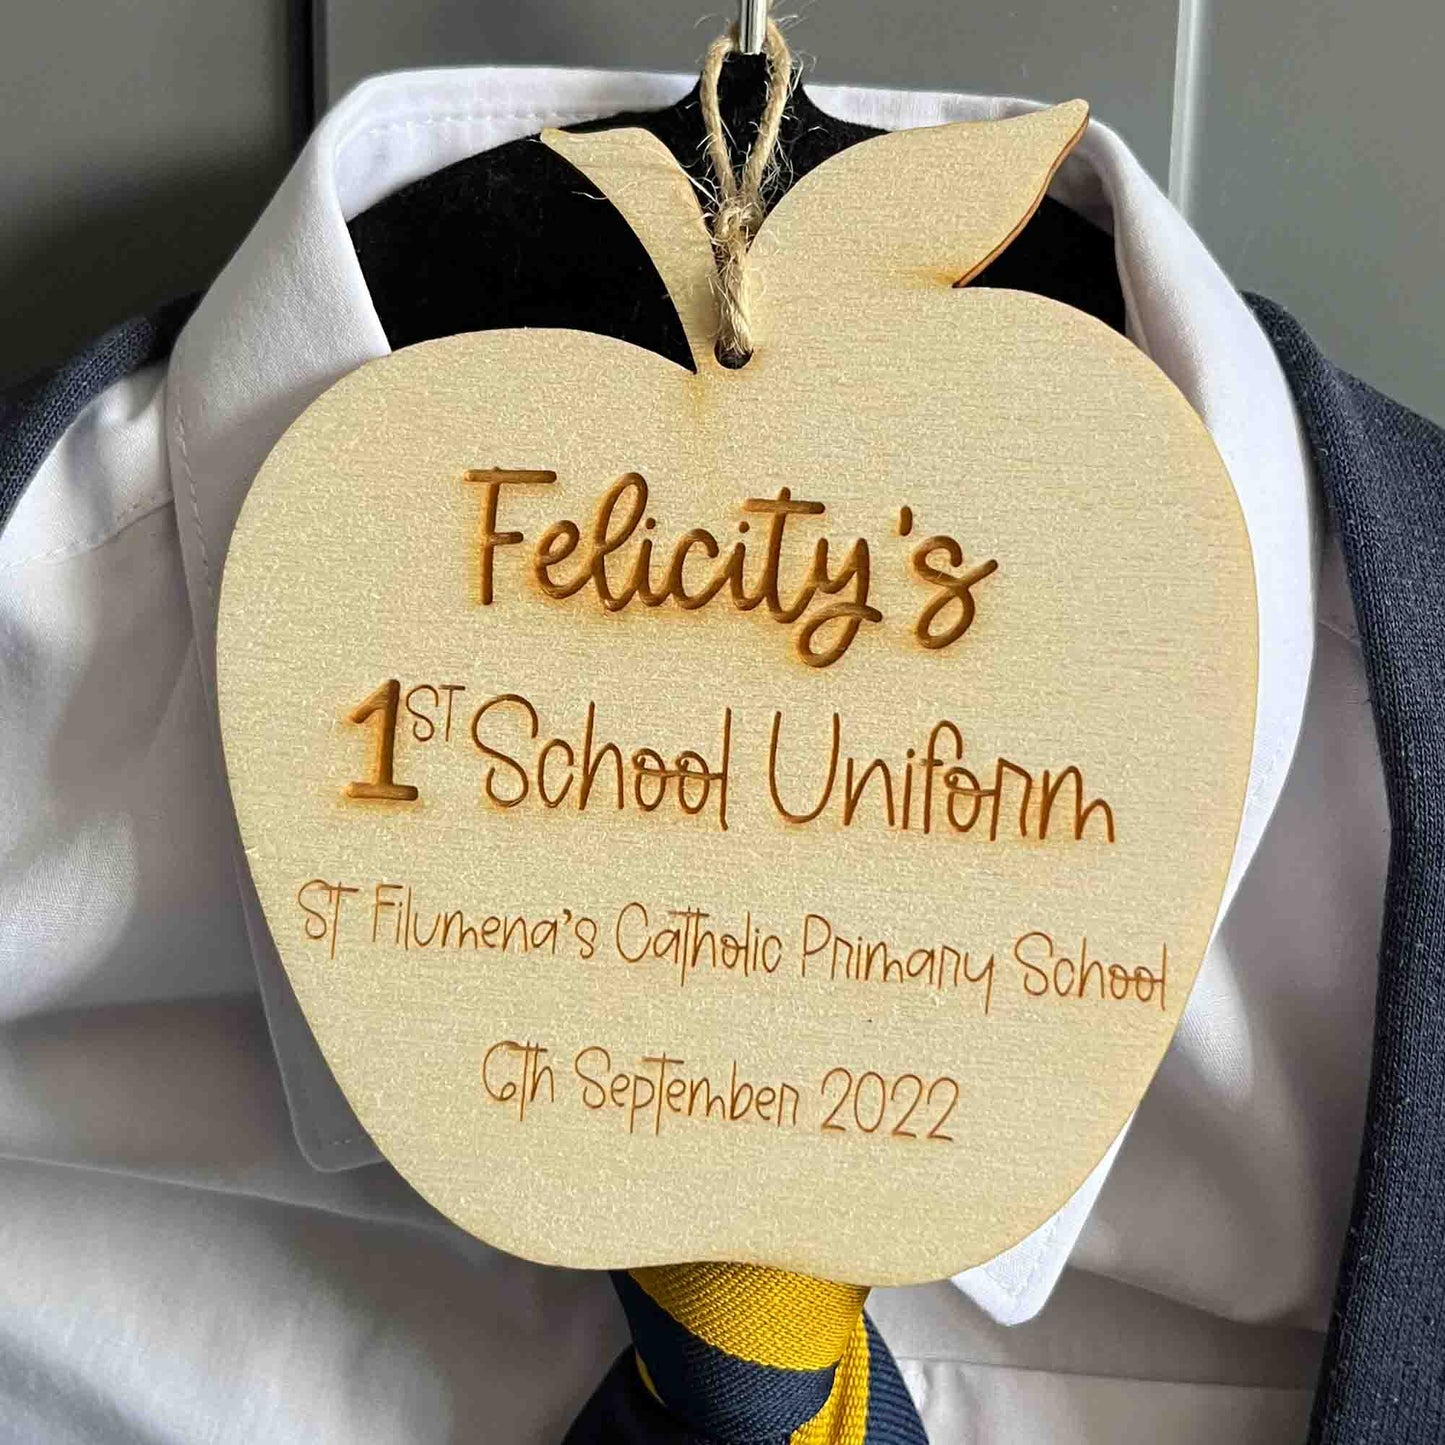 1st school uniform hanger tag. in shape of an apple